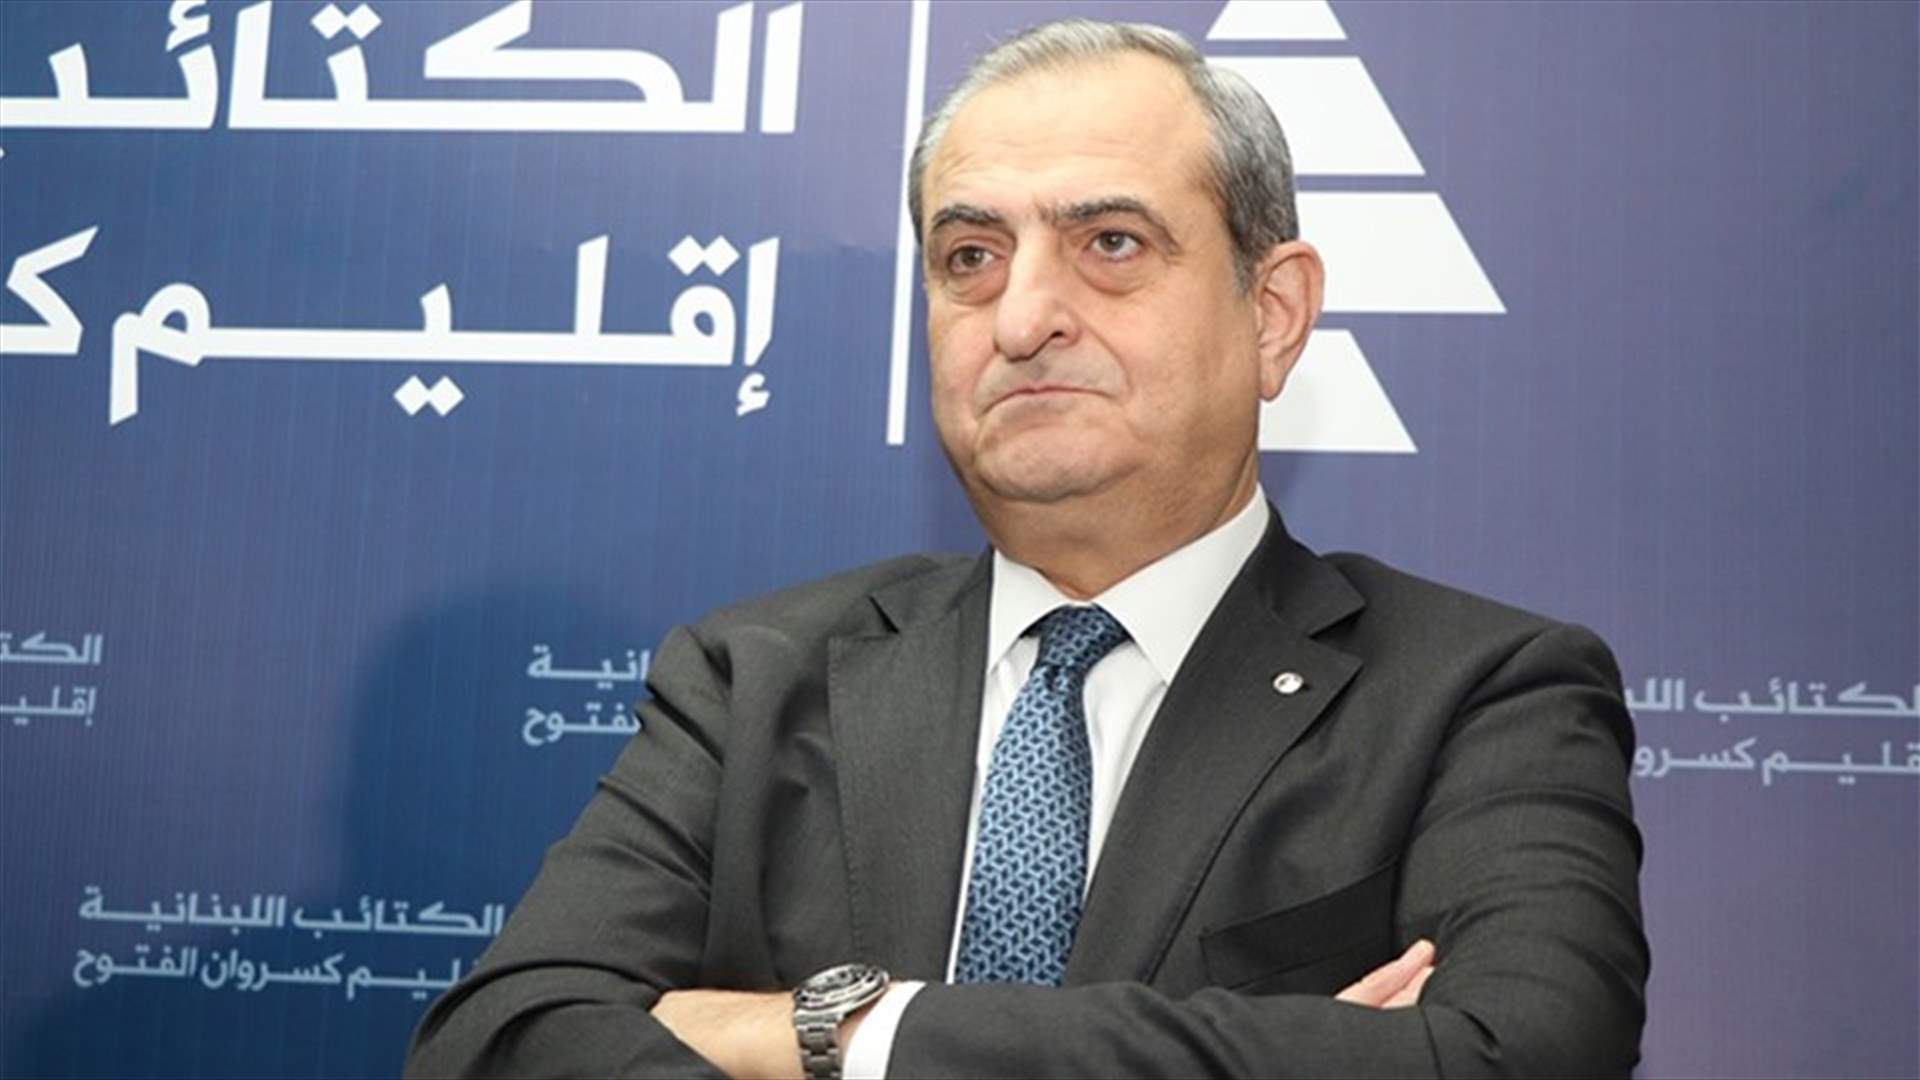 وفاة الأمين العام لحزب الكتائب نزار نجاريان جراء انفجار بيروت